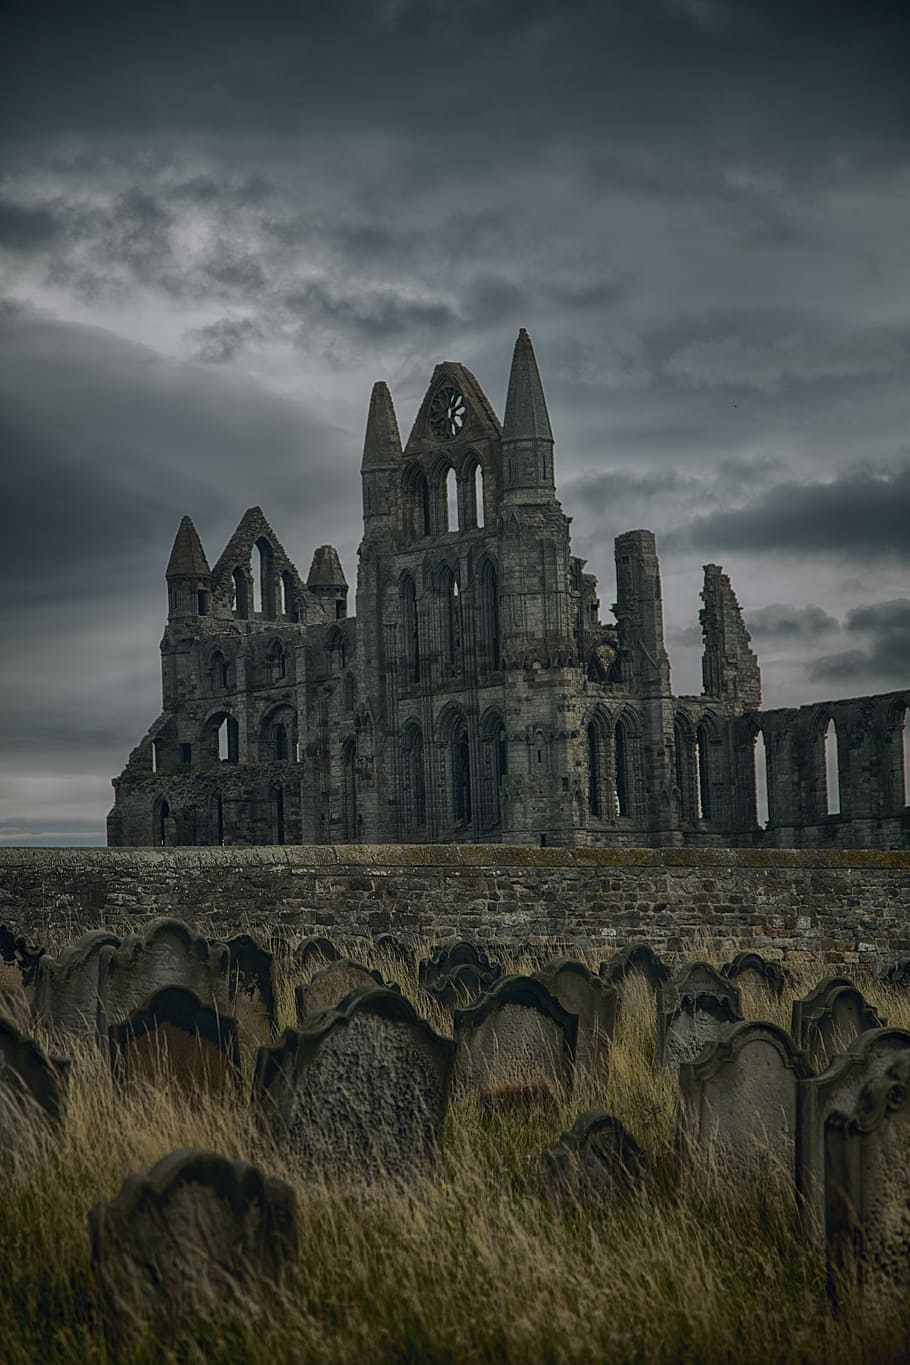 회색 콘크리트 성, 고딕, 대사원, whitby, 뱀파이어, 드라큘라, 수도원, 경계표, 영국, 요크셔